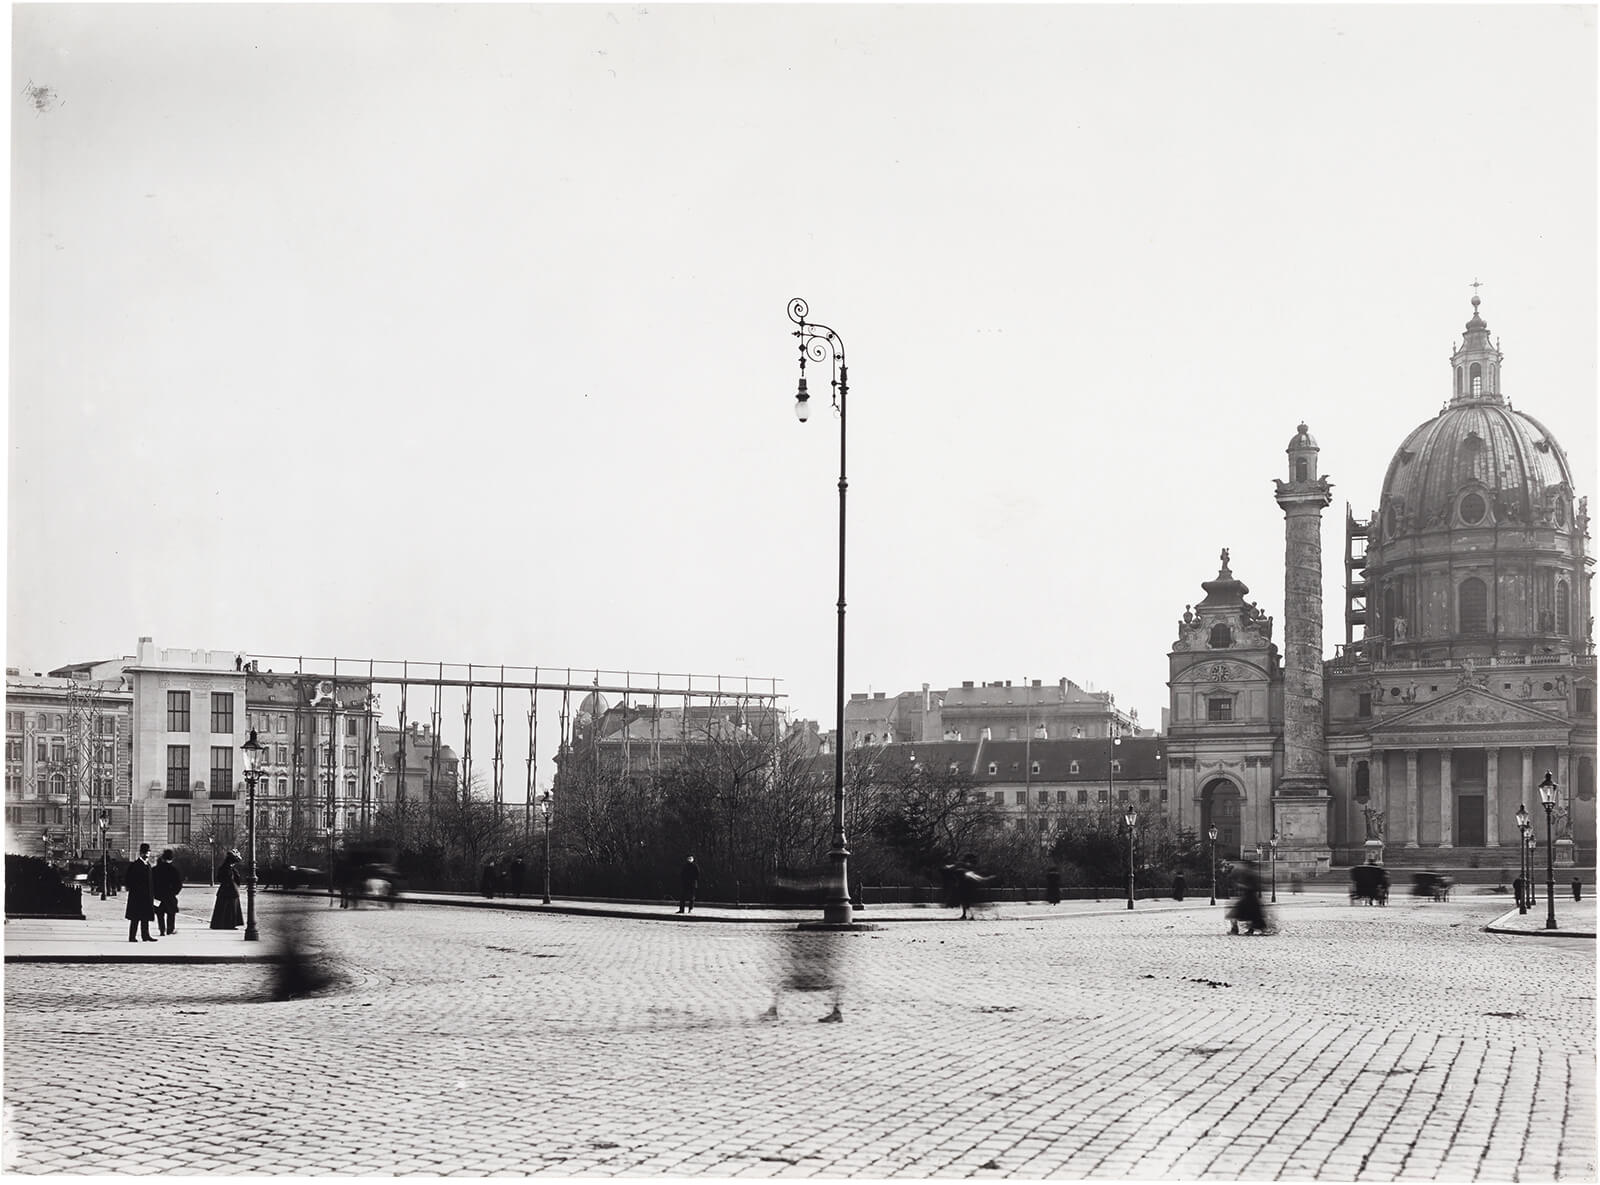 Blick auf die Karlskirche und auf die Fassadenschablone von Otto Wagners Stadtmuseum, 1909/10, Foto: Gerlach & Wiedling, Wien Museum, Inv.-Nr. HMW 135.109/5/1/1 